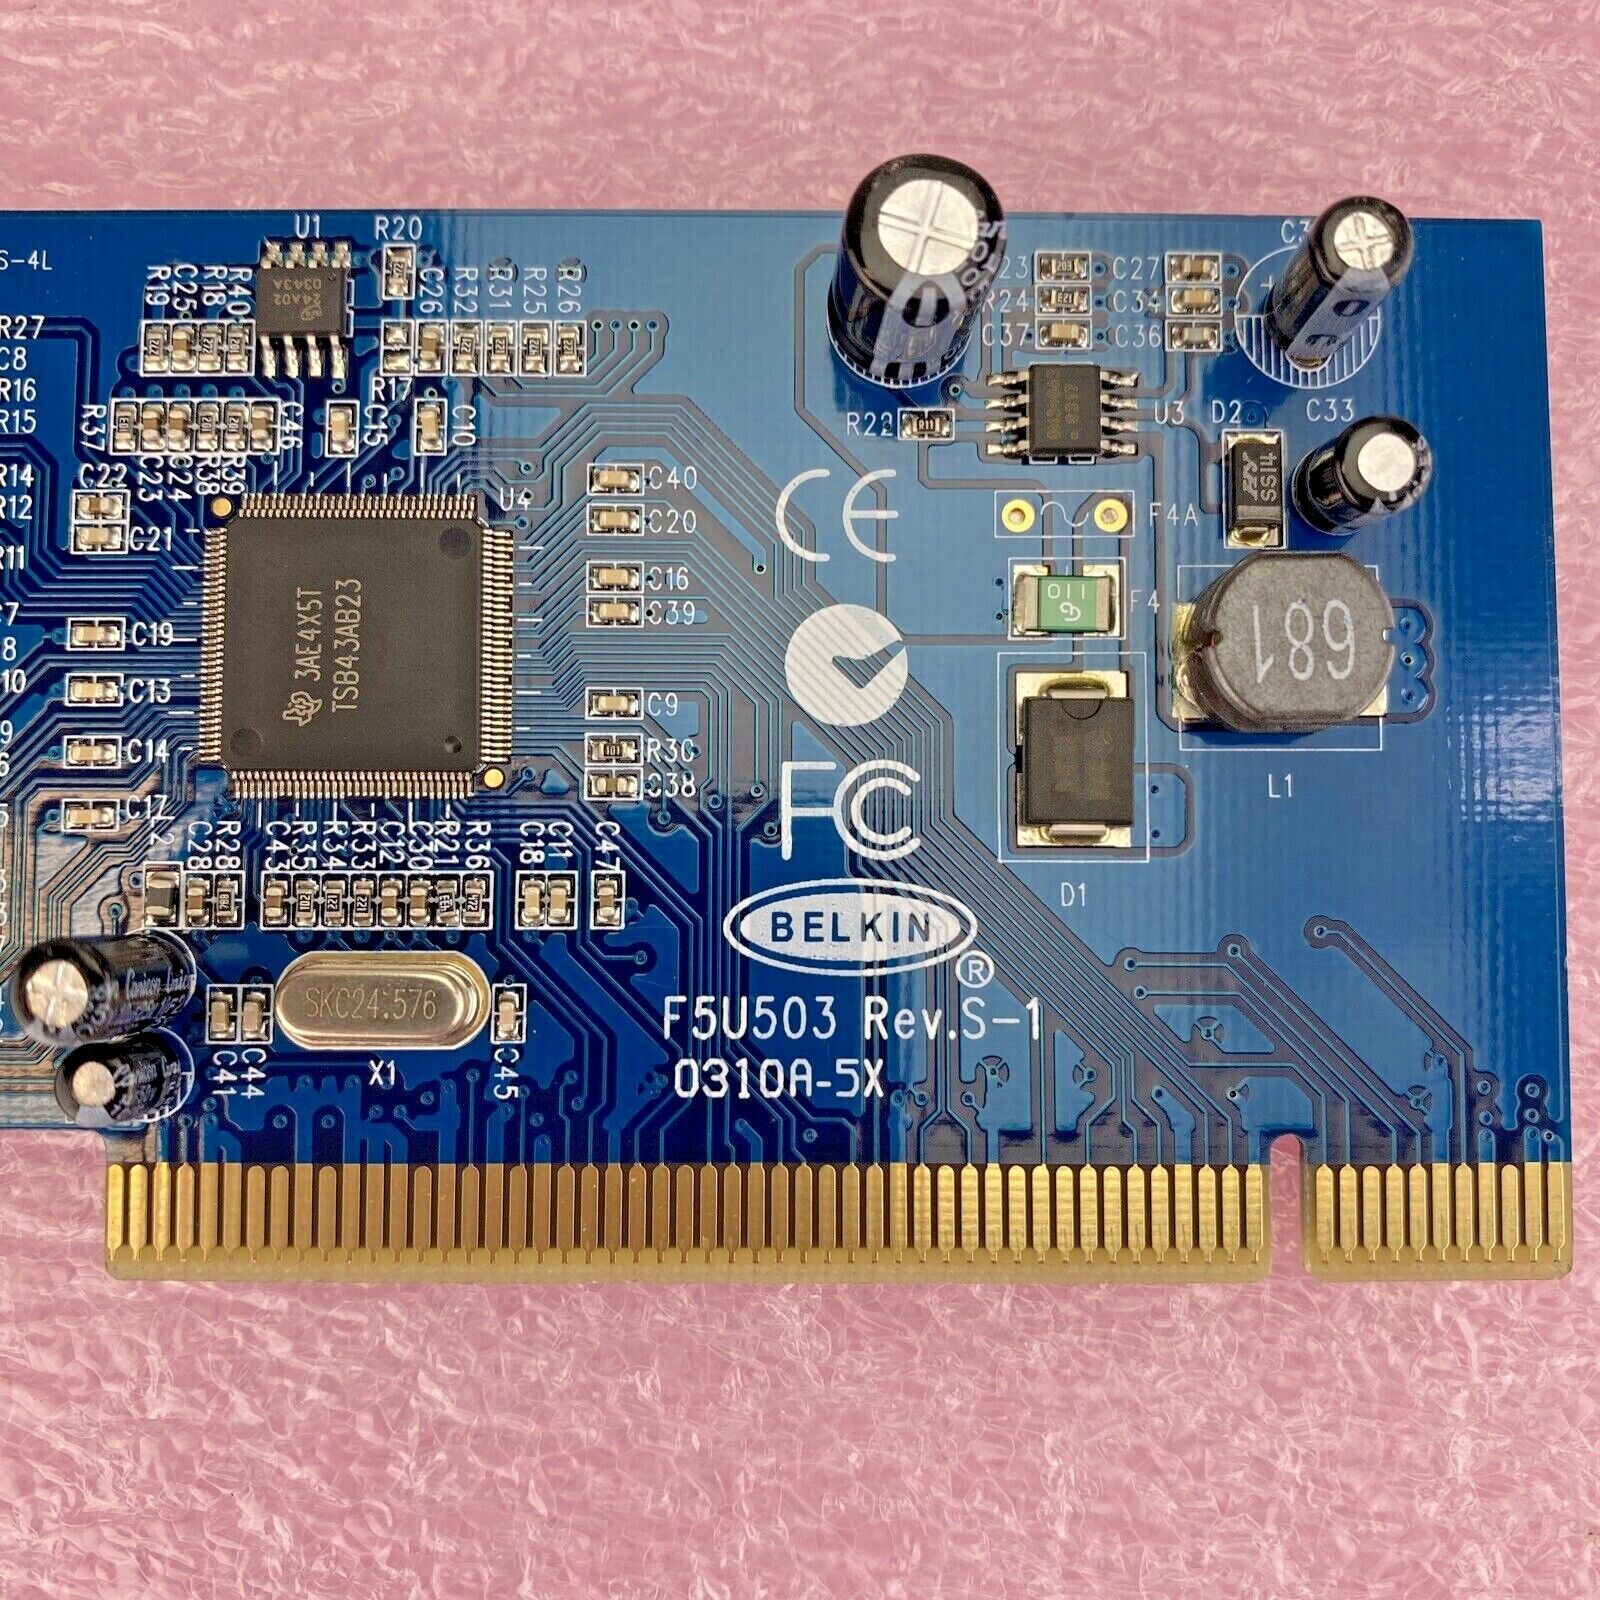 Belkin F5U503 Rev.S-1 3-port Firewire 400 PCI card